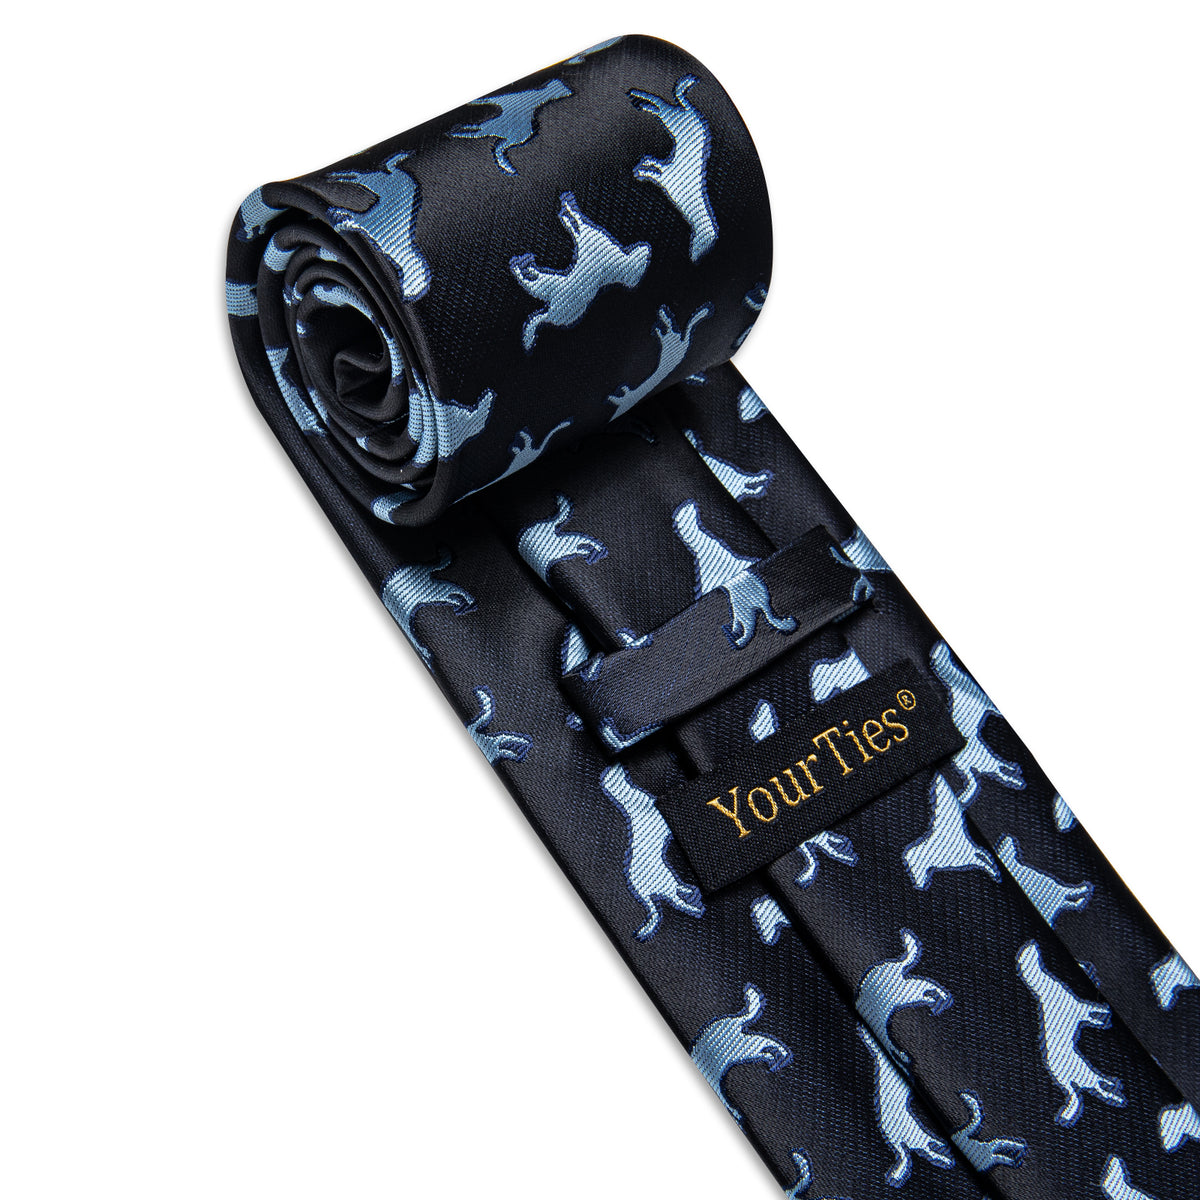 YourTies Black Blue Puppy Pattern Men's Tie Handkerchief Cufflinks Set